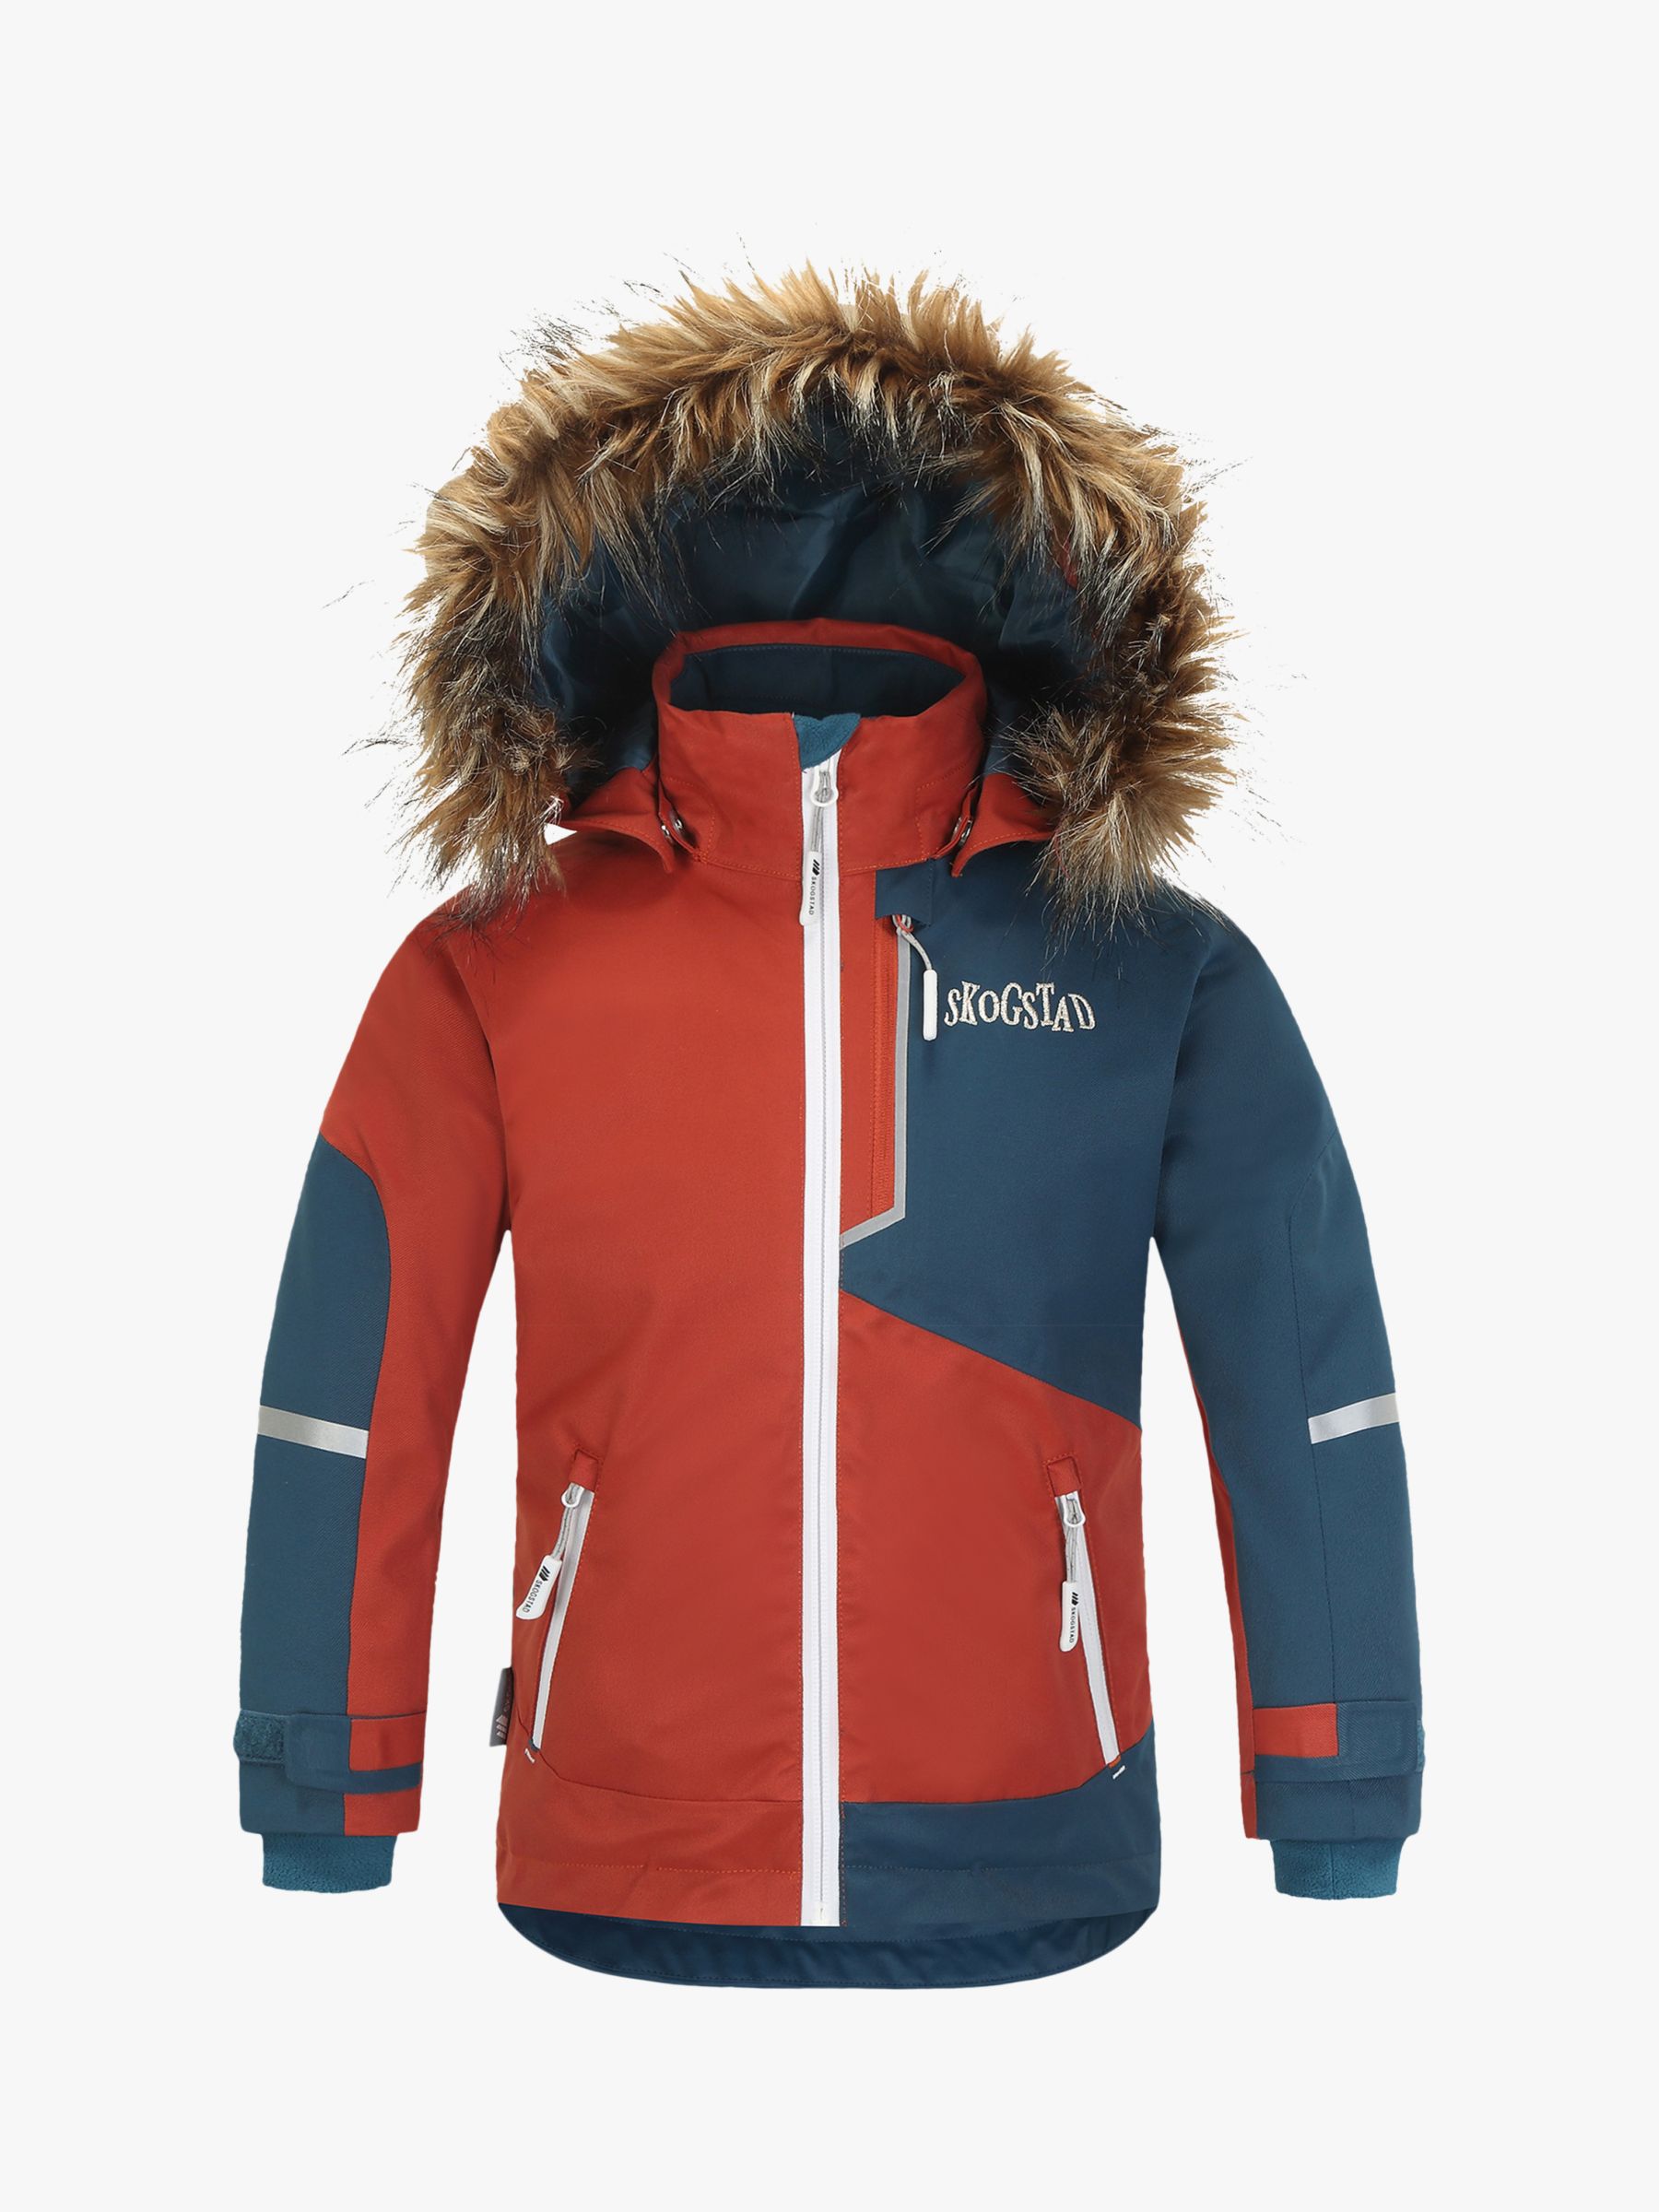 Skogstad Boys' Waterproof Jacket, Red/Blue